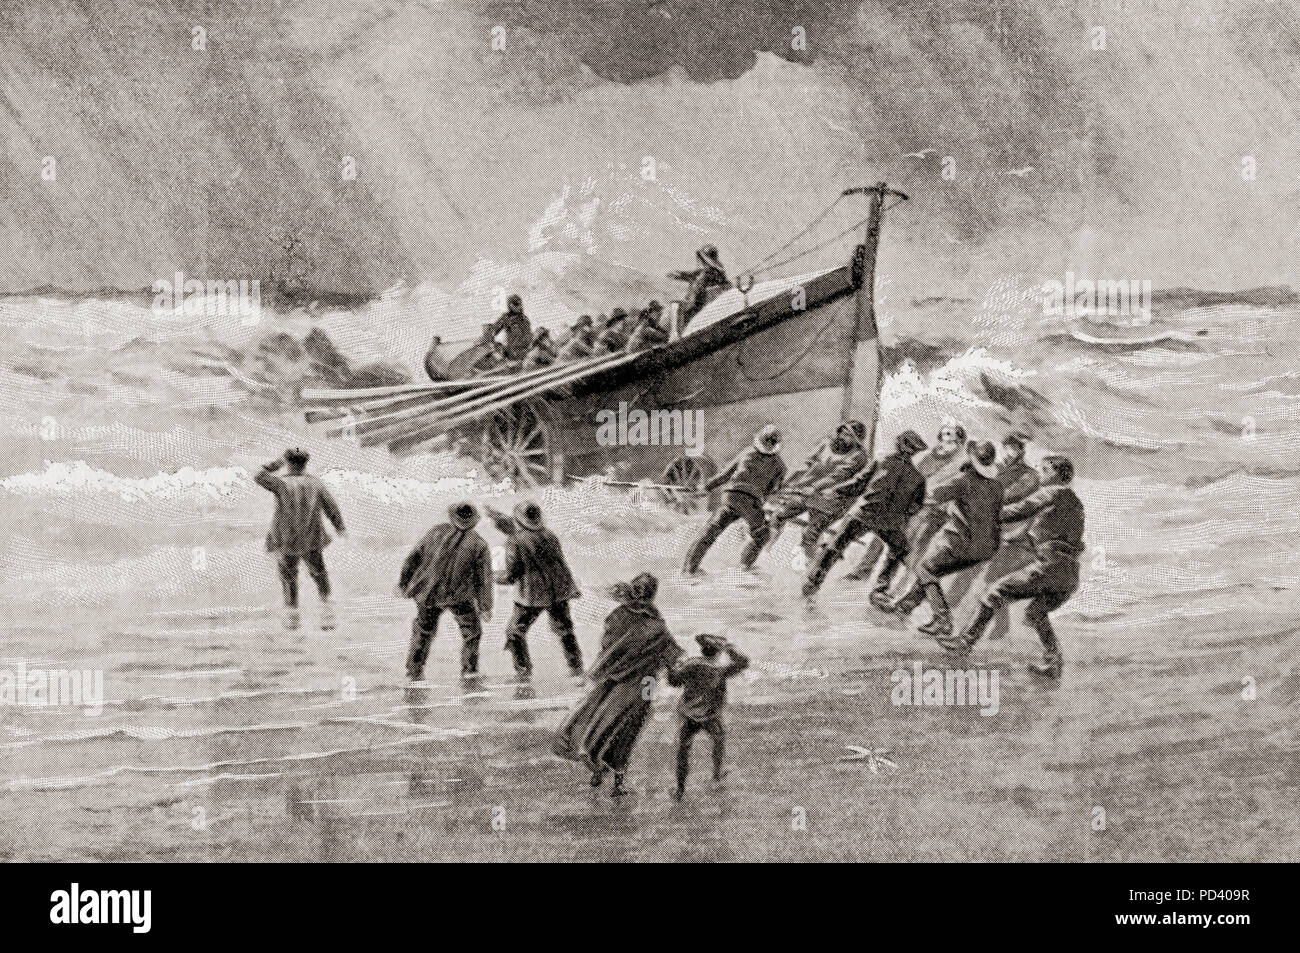 L'embarcation, la Croix Rouge de la mer, un bateau utilisé pour aller à l'embarcation de sauvetage d'un navire en détresse, ou ses survivants, pour sauver l'équipage et les passagers. Du livre de navires, publié vers 1920. Banque D'Images